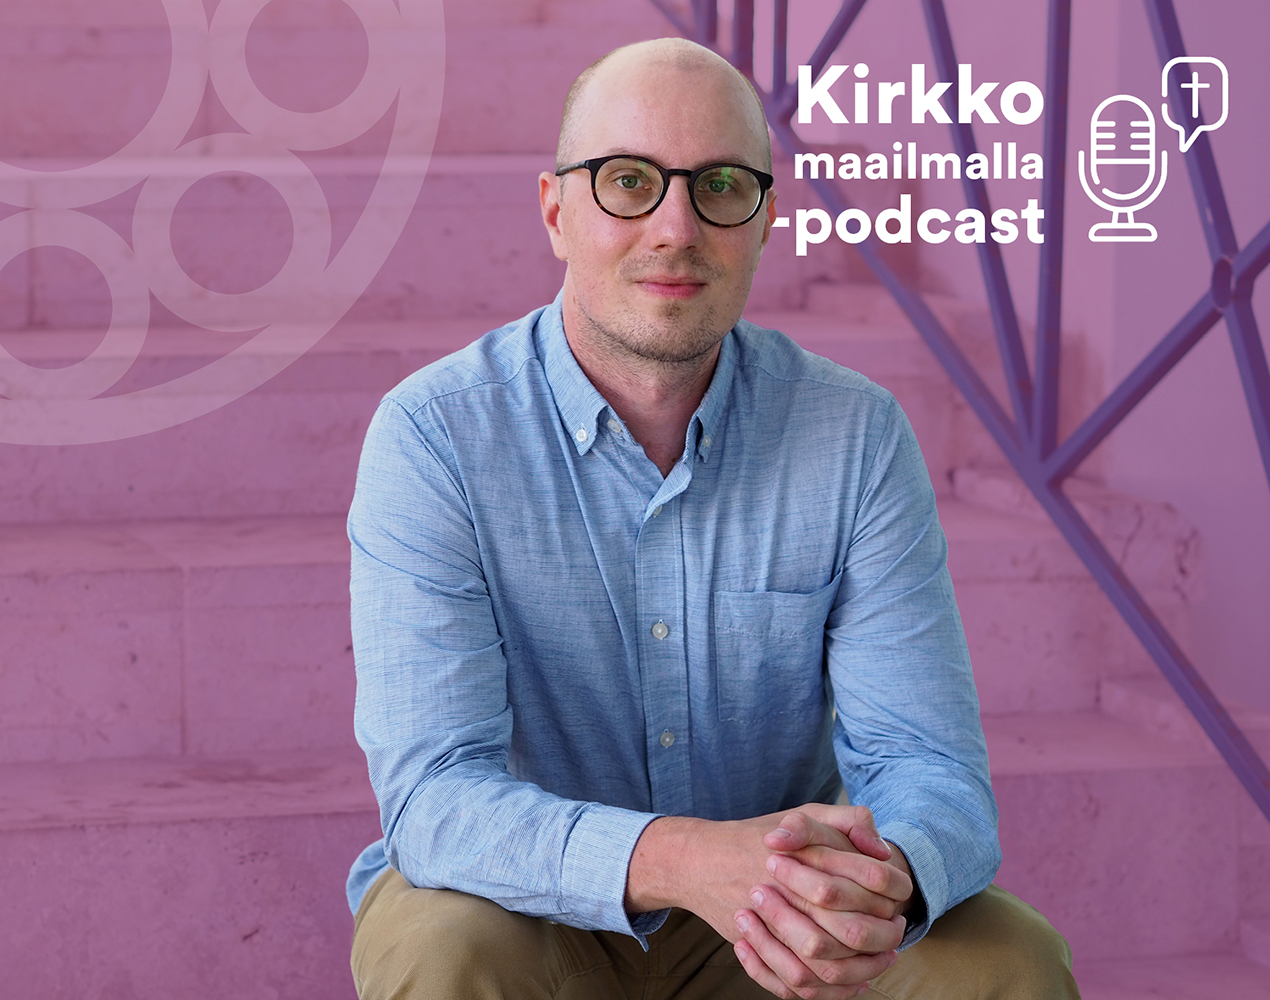 Kirkko maailmalla -podcastissa haastateltavana Iiro Pankakoski.